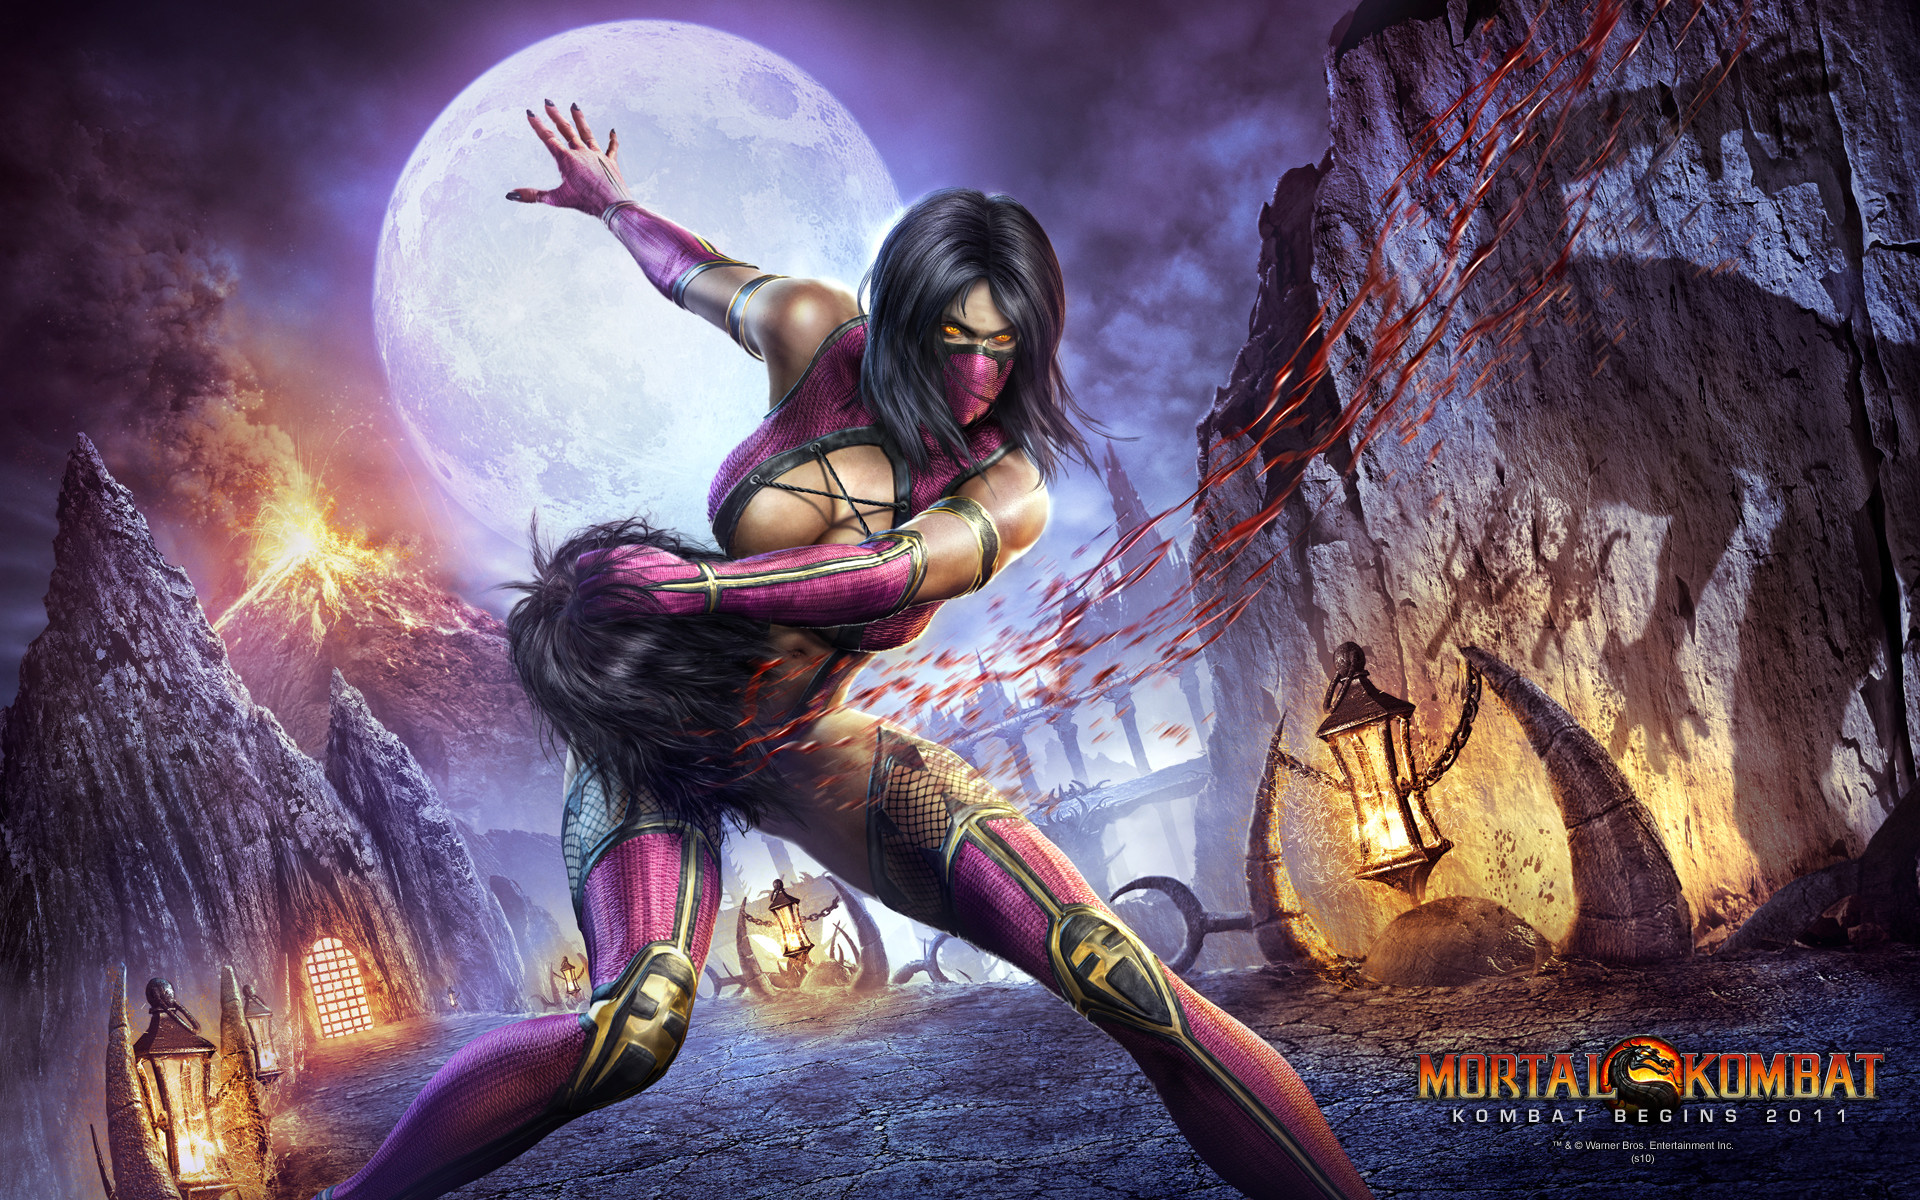 Most Beautiful Mortal Kombat 9 Fq - Mortal Kombat 9, Cool Mortal